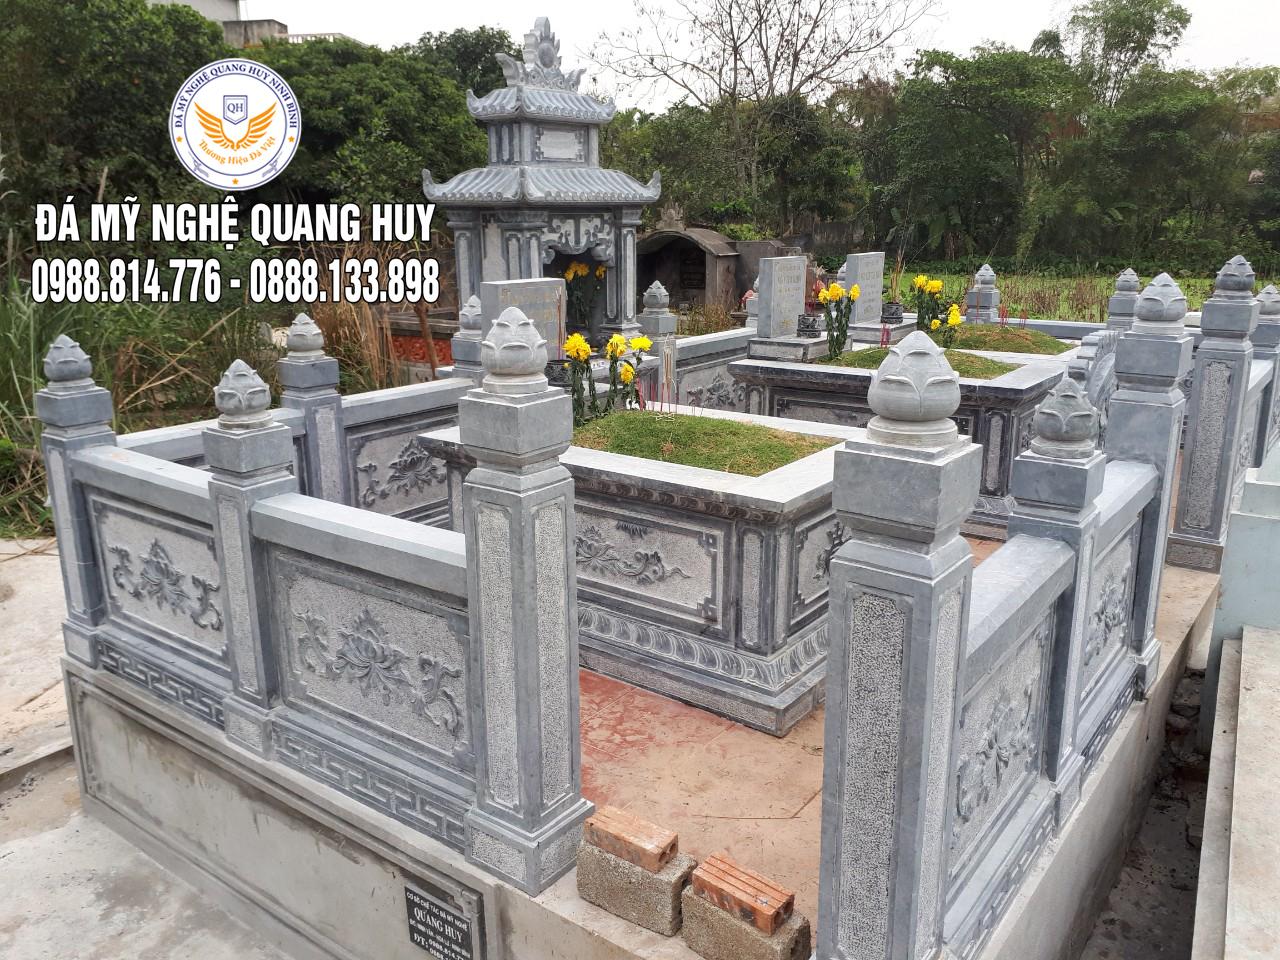  Khu Lăng mộ đá đẹp dòng họ Đỗ Văn chi 4 tại Trường Yên, Hoa Lư, Ninh Bình